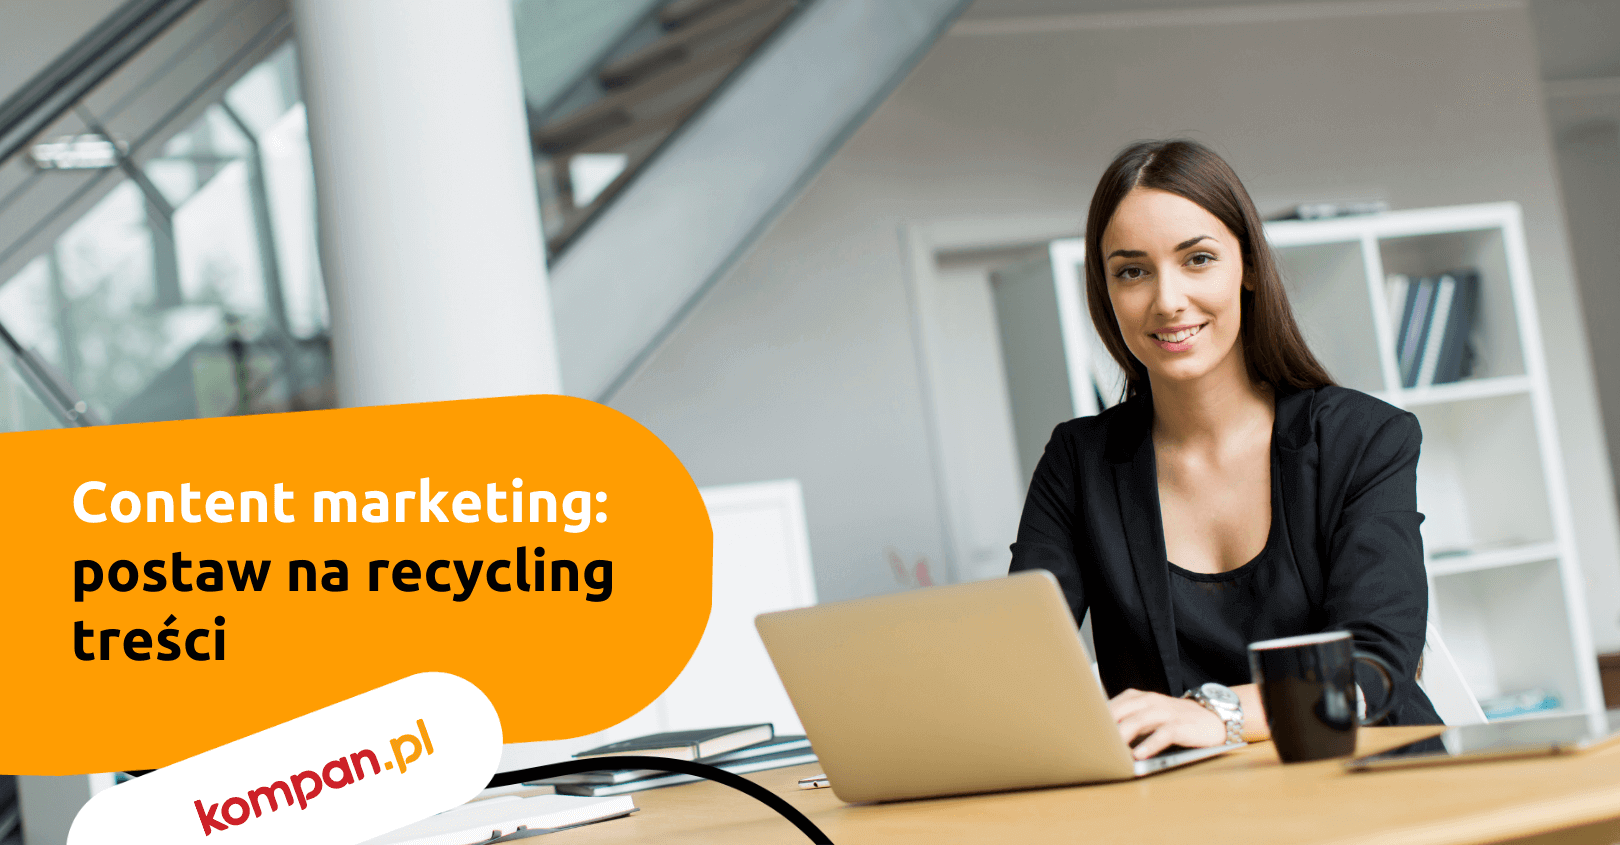 Content marketing – postaw na recycling treści